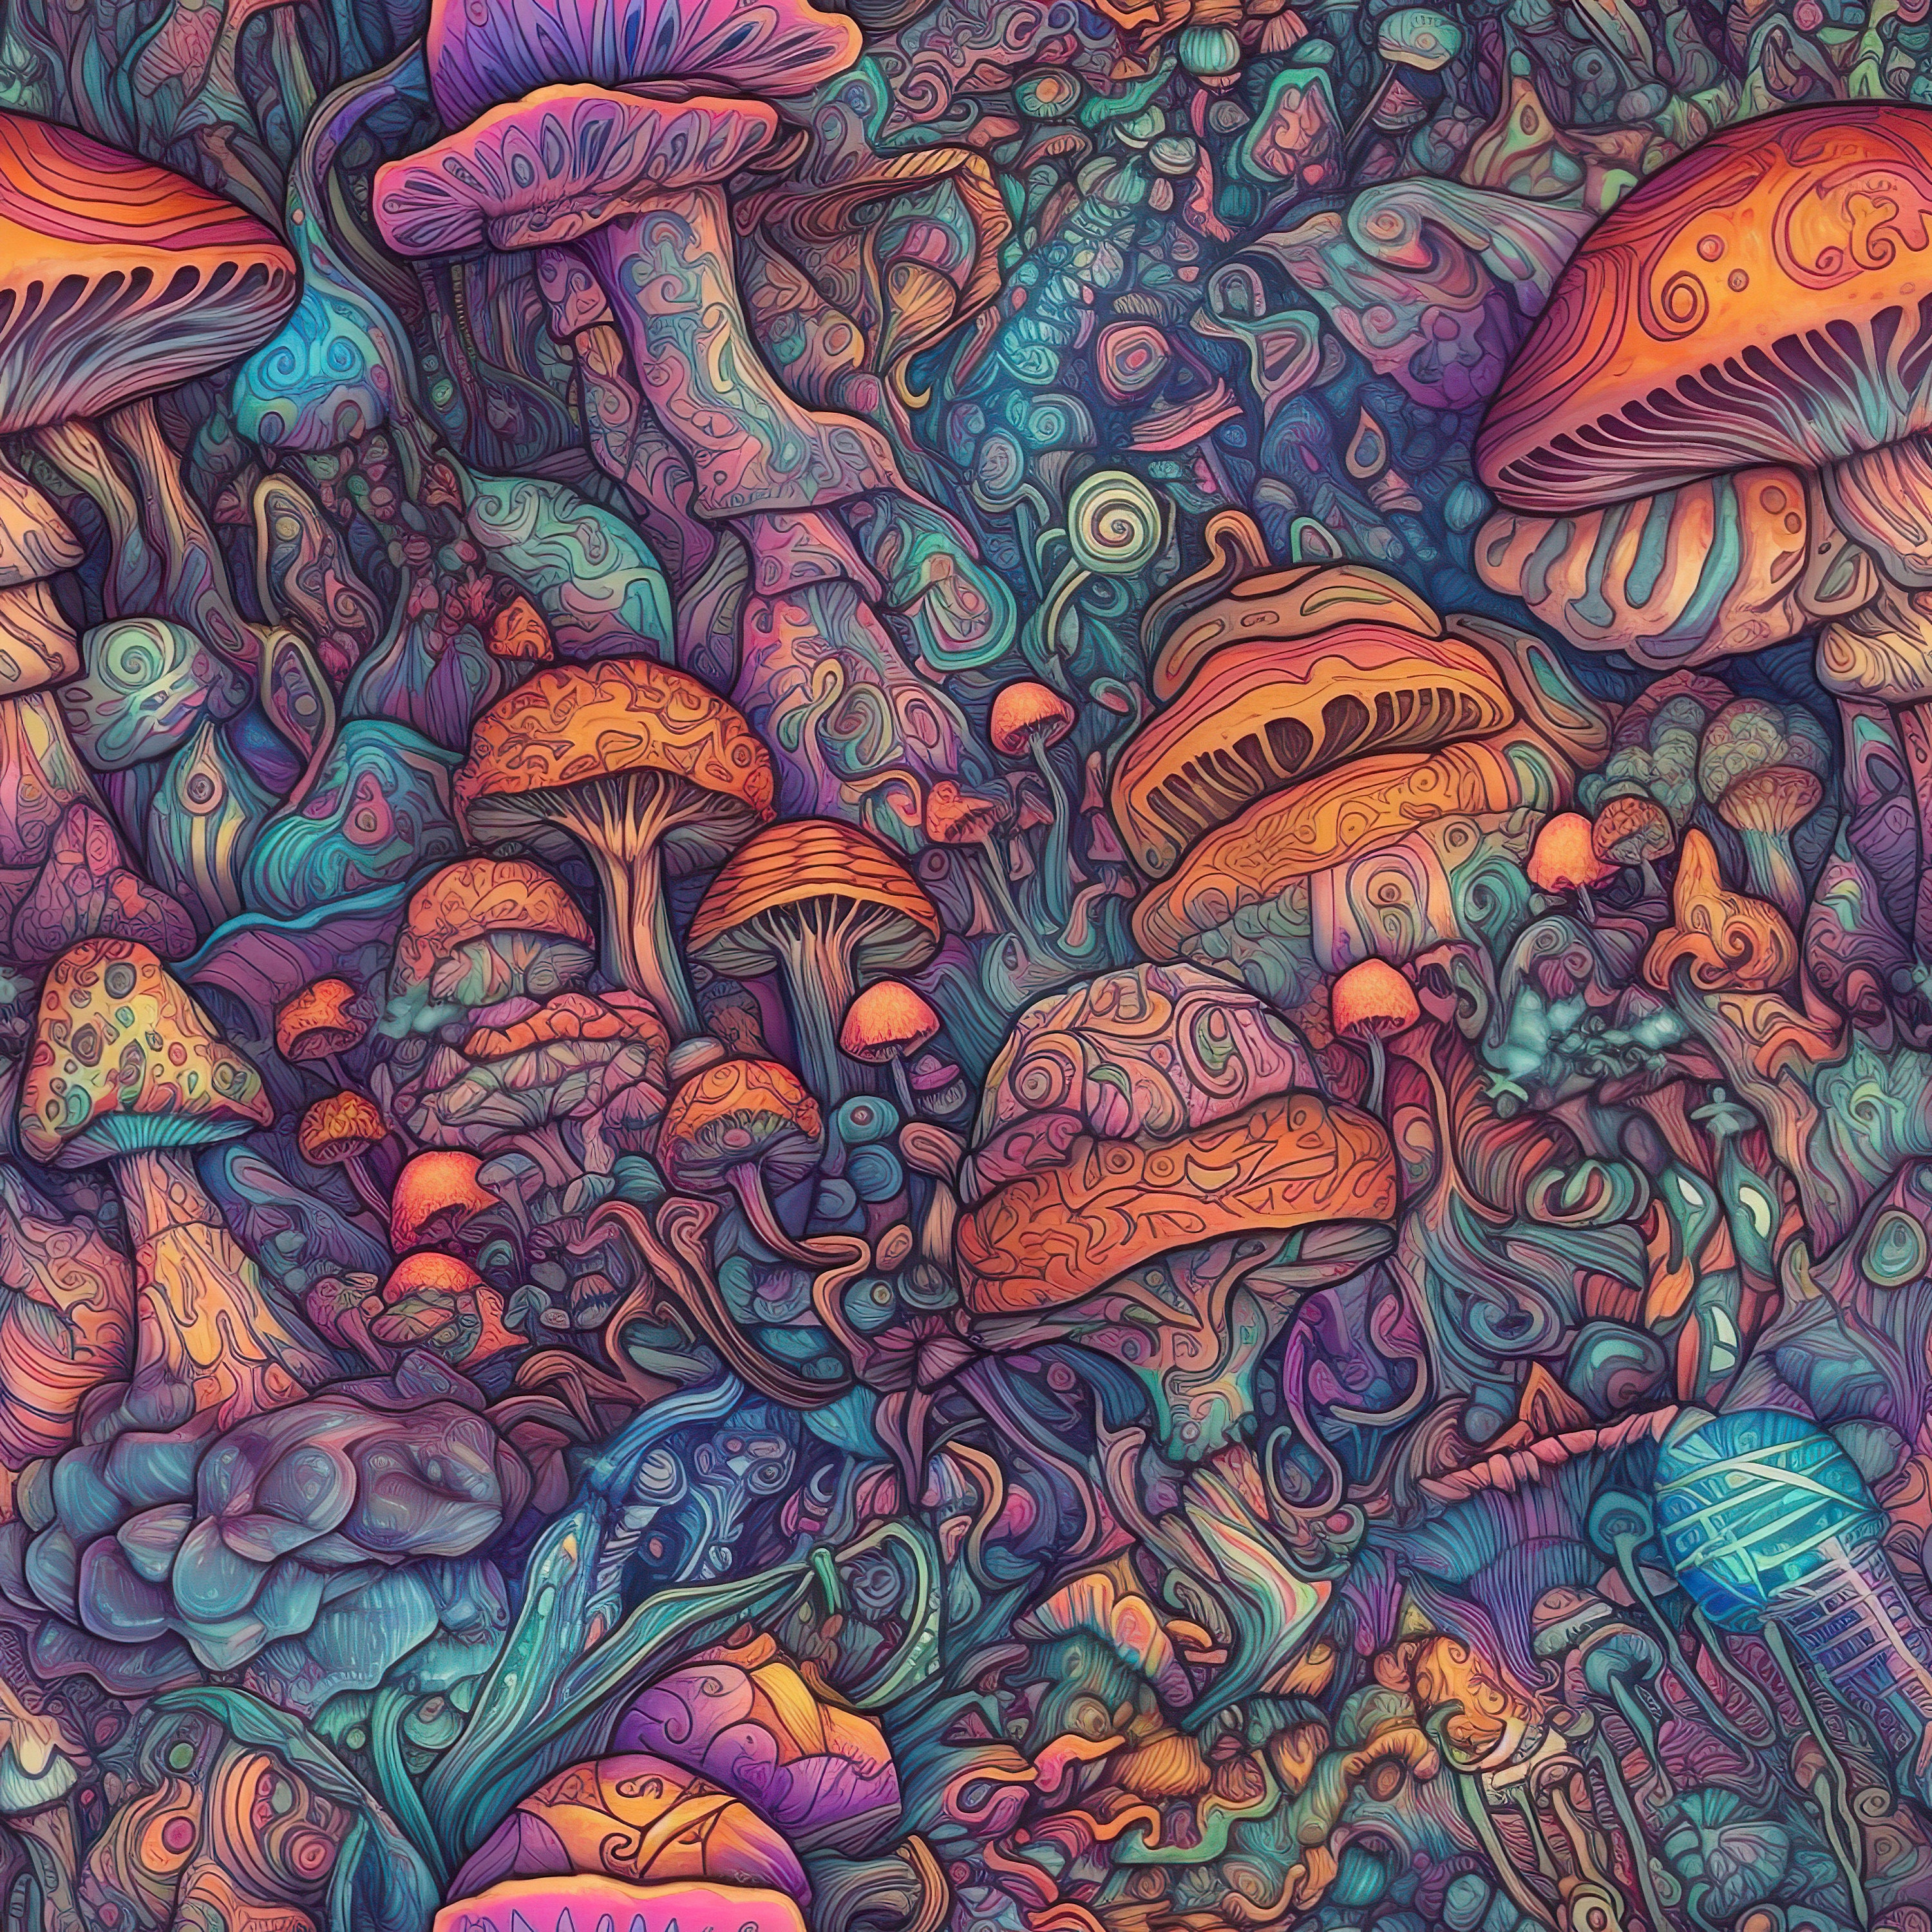 Magic Mushrooms 1080P, 2K, 4K, 5K HD wallpapers free download | Wallpaper  Flare